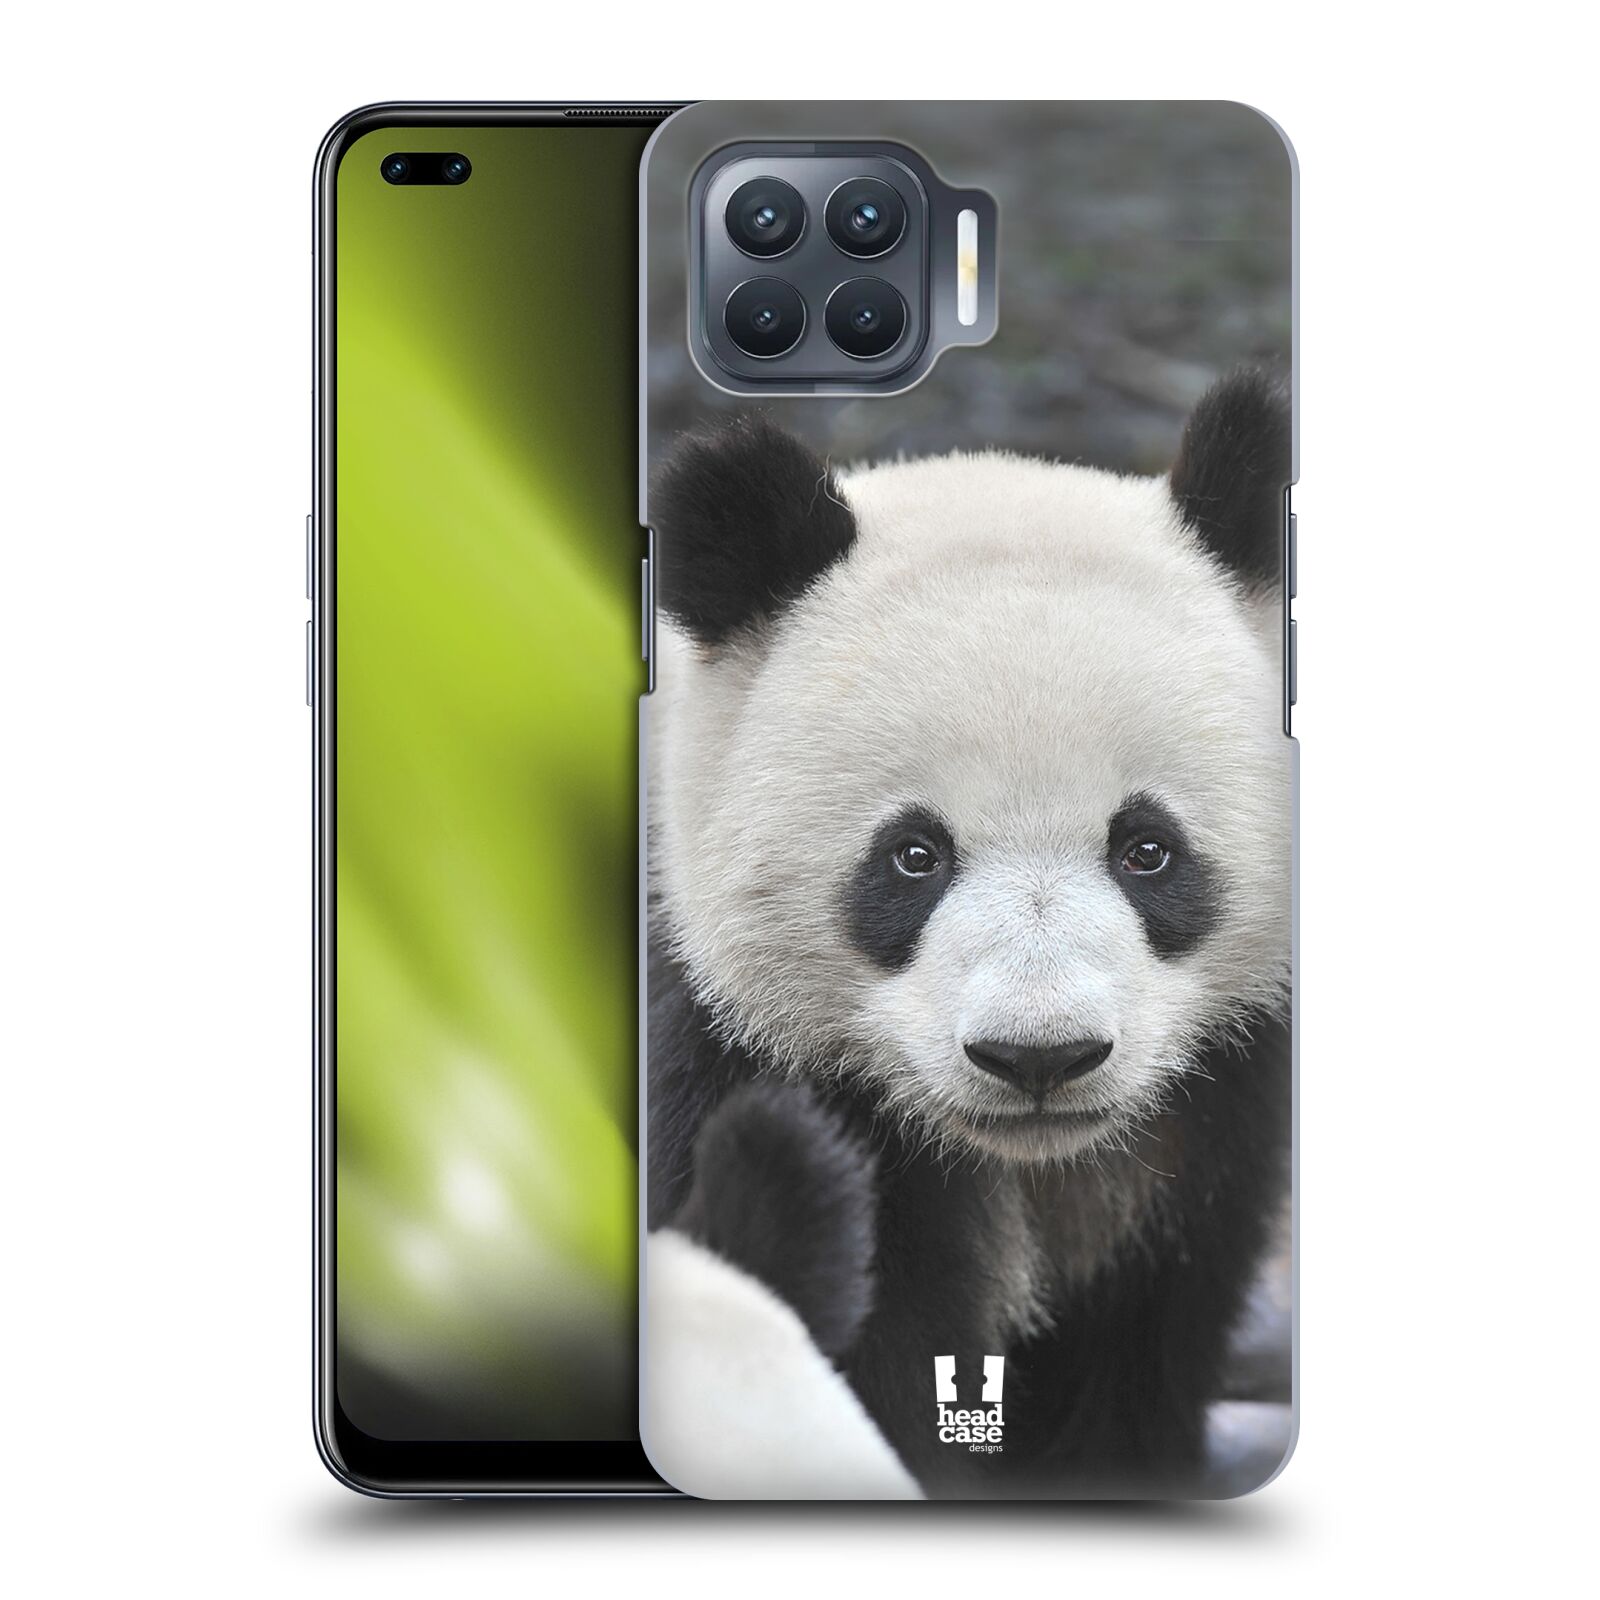 Zadní obal pro mobil Oppo Reno 4 LITE - HEAD CASE - Svět zvířat medvěd panda